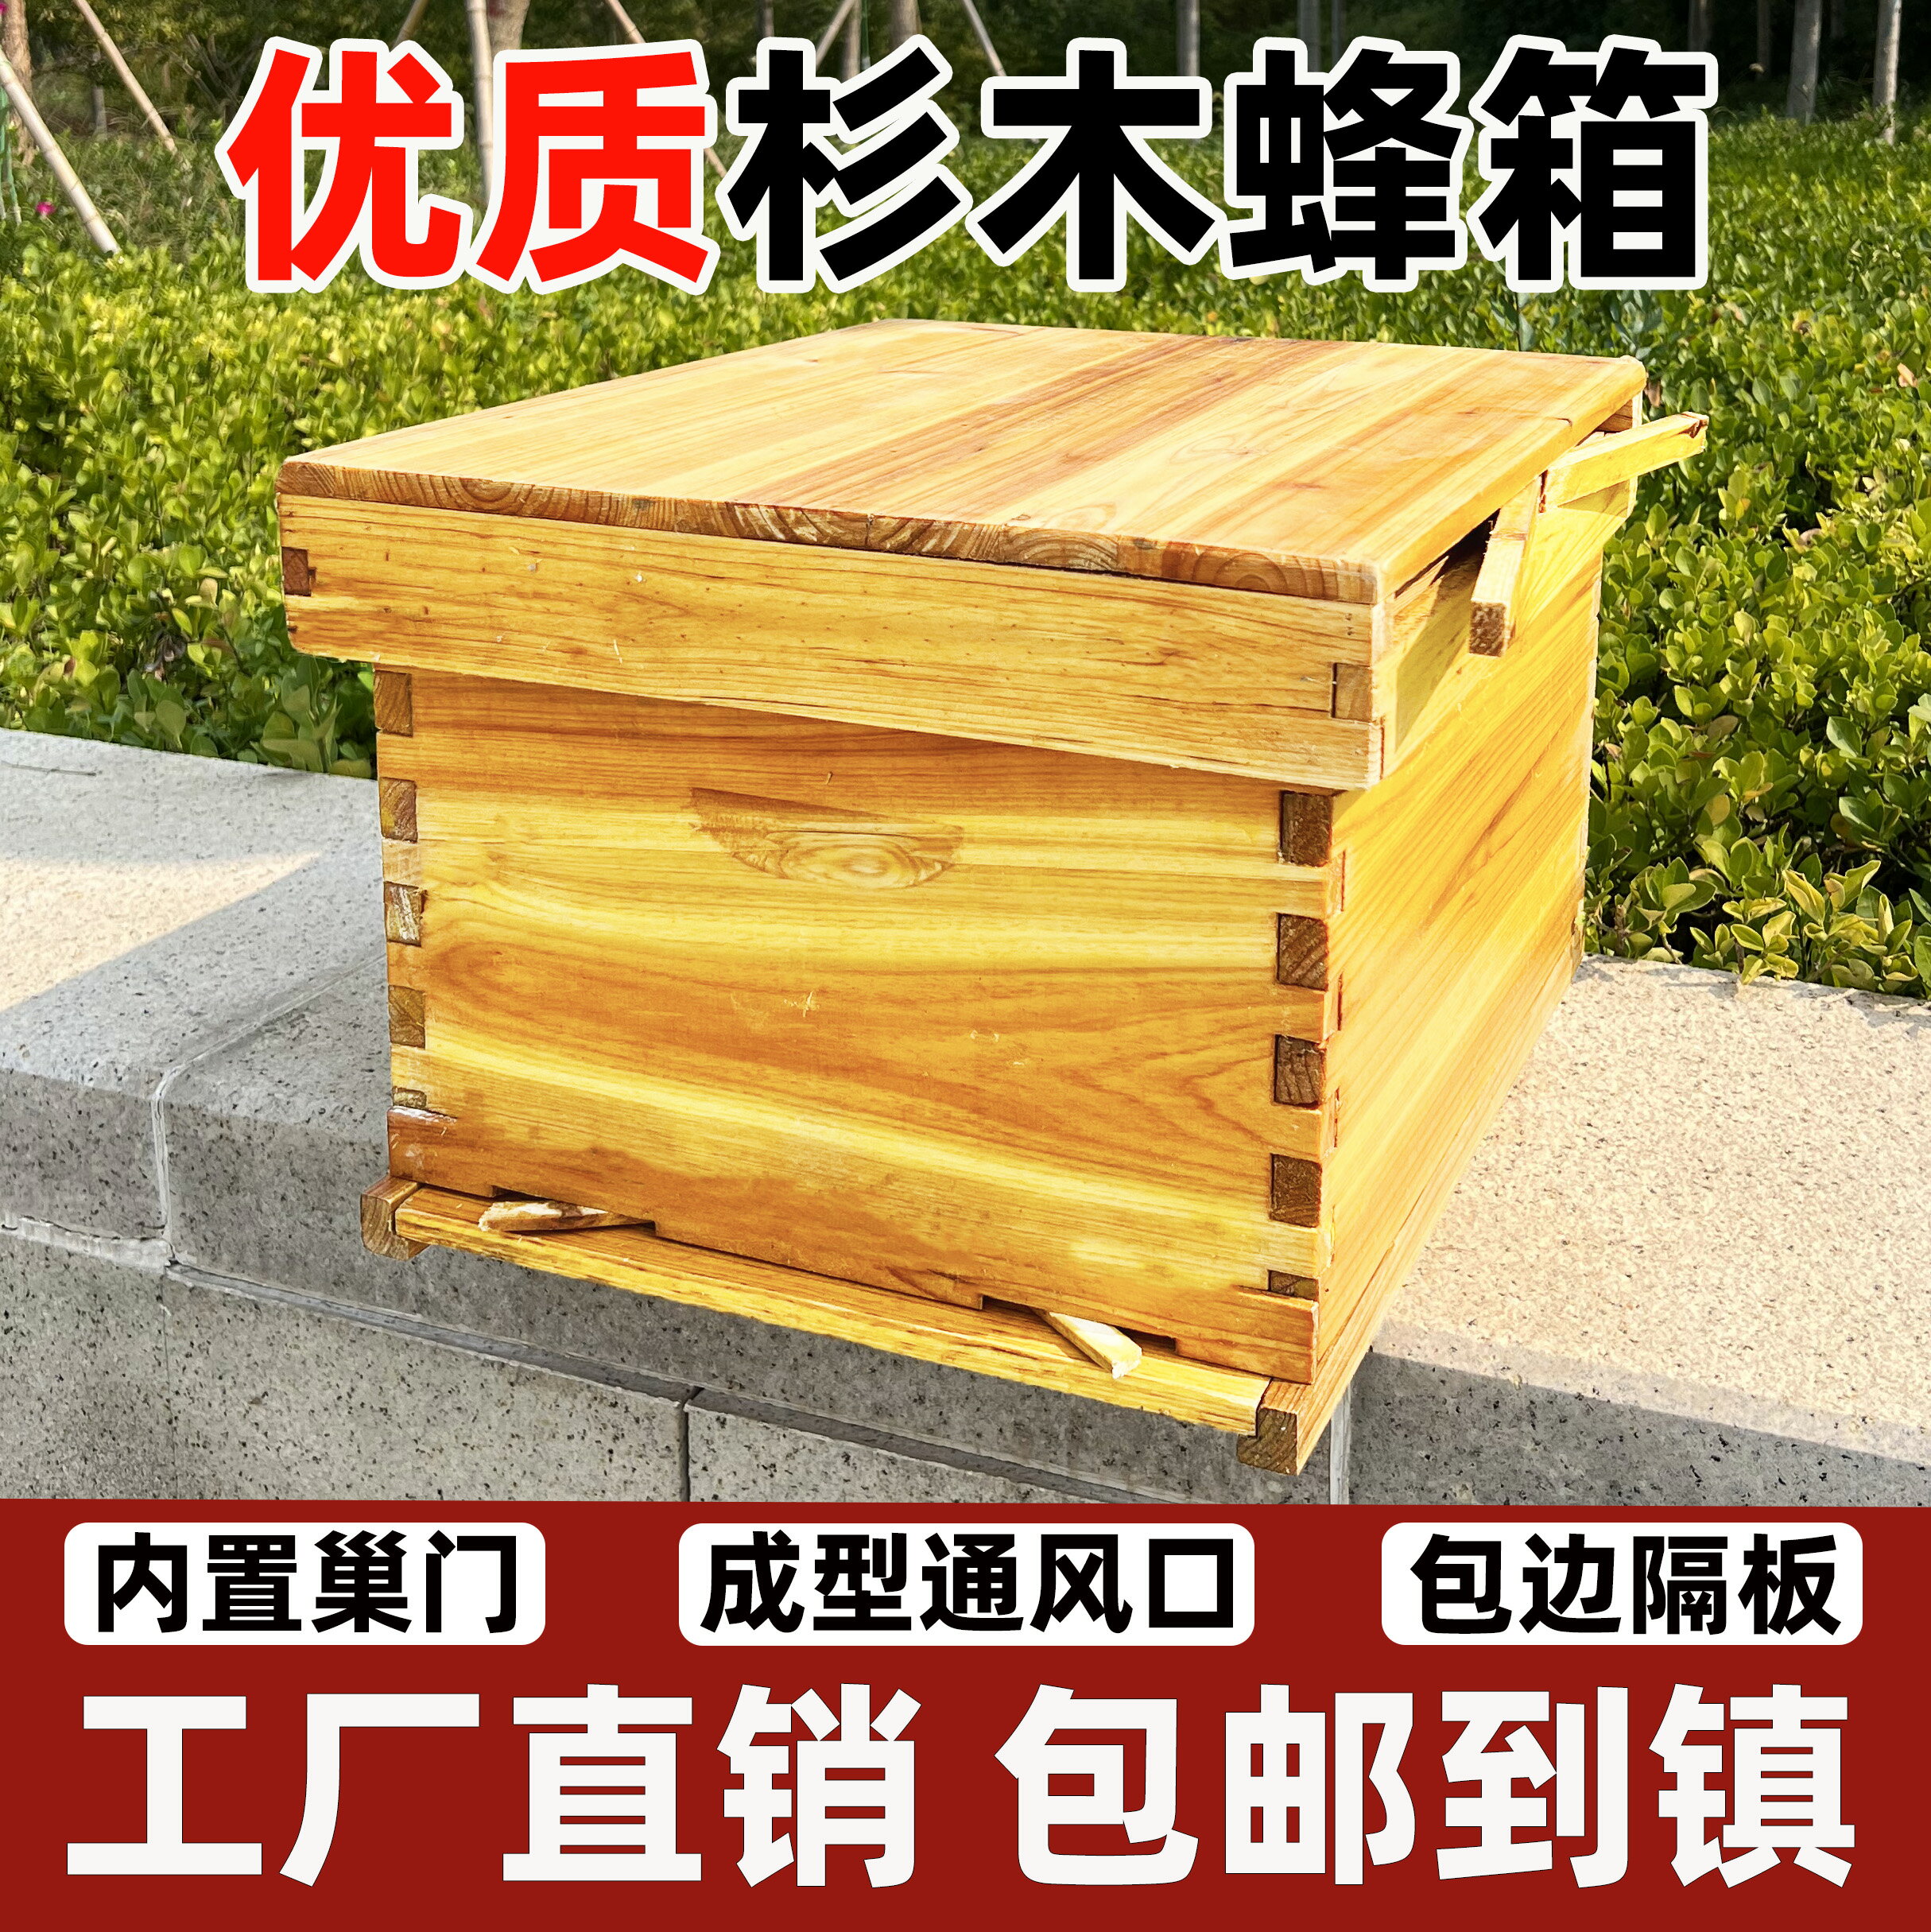 中蜂蜂箱全套蜜蜂蜂箱十框七框標準杉木蜂箱意蜂蜂桶養蜂工具全套